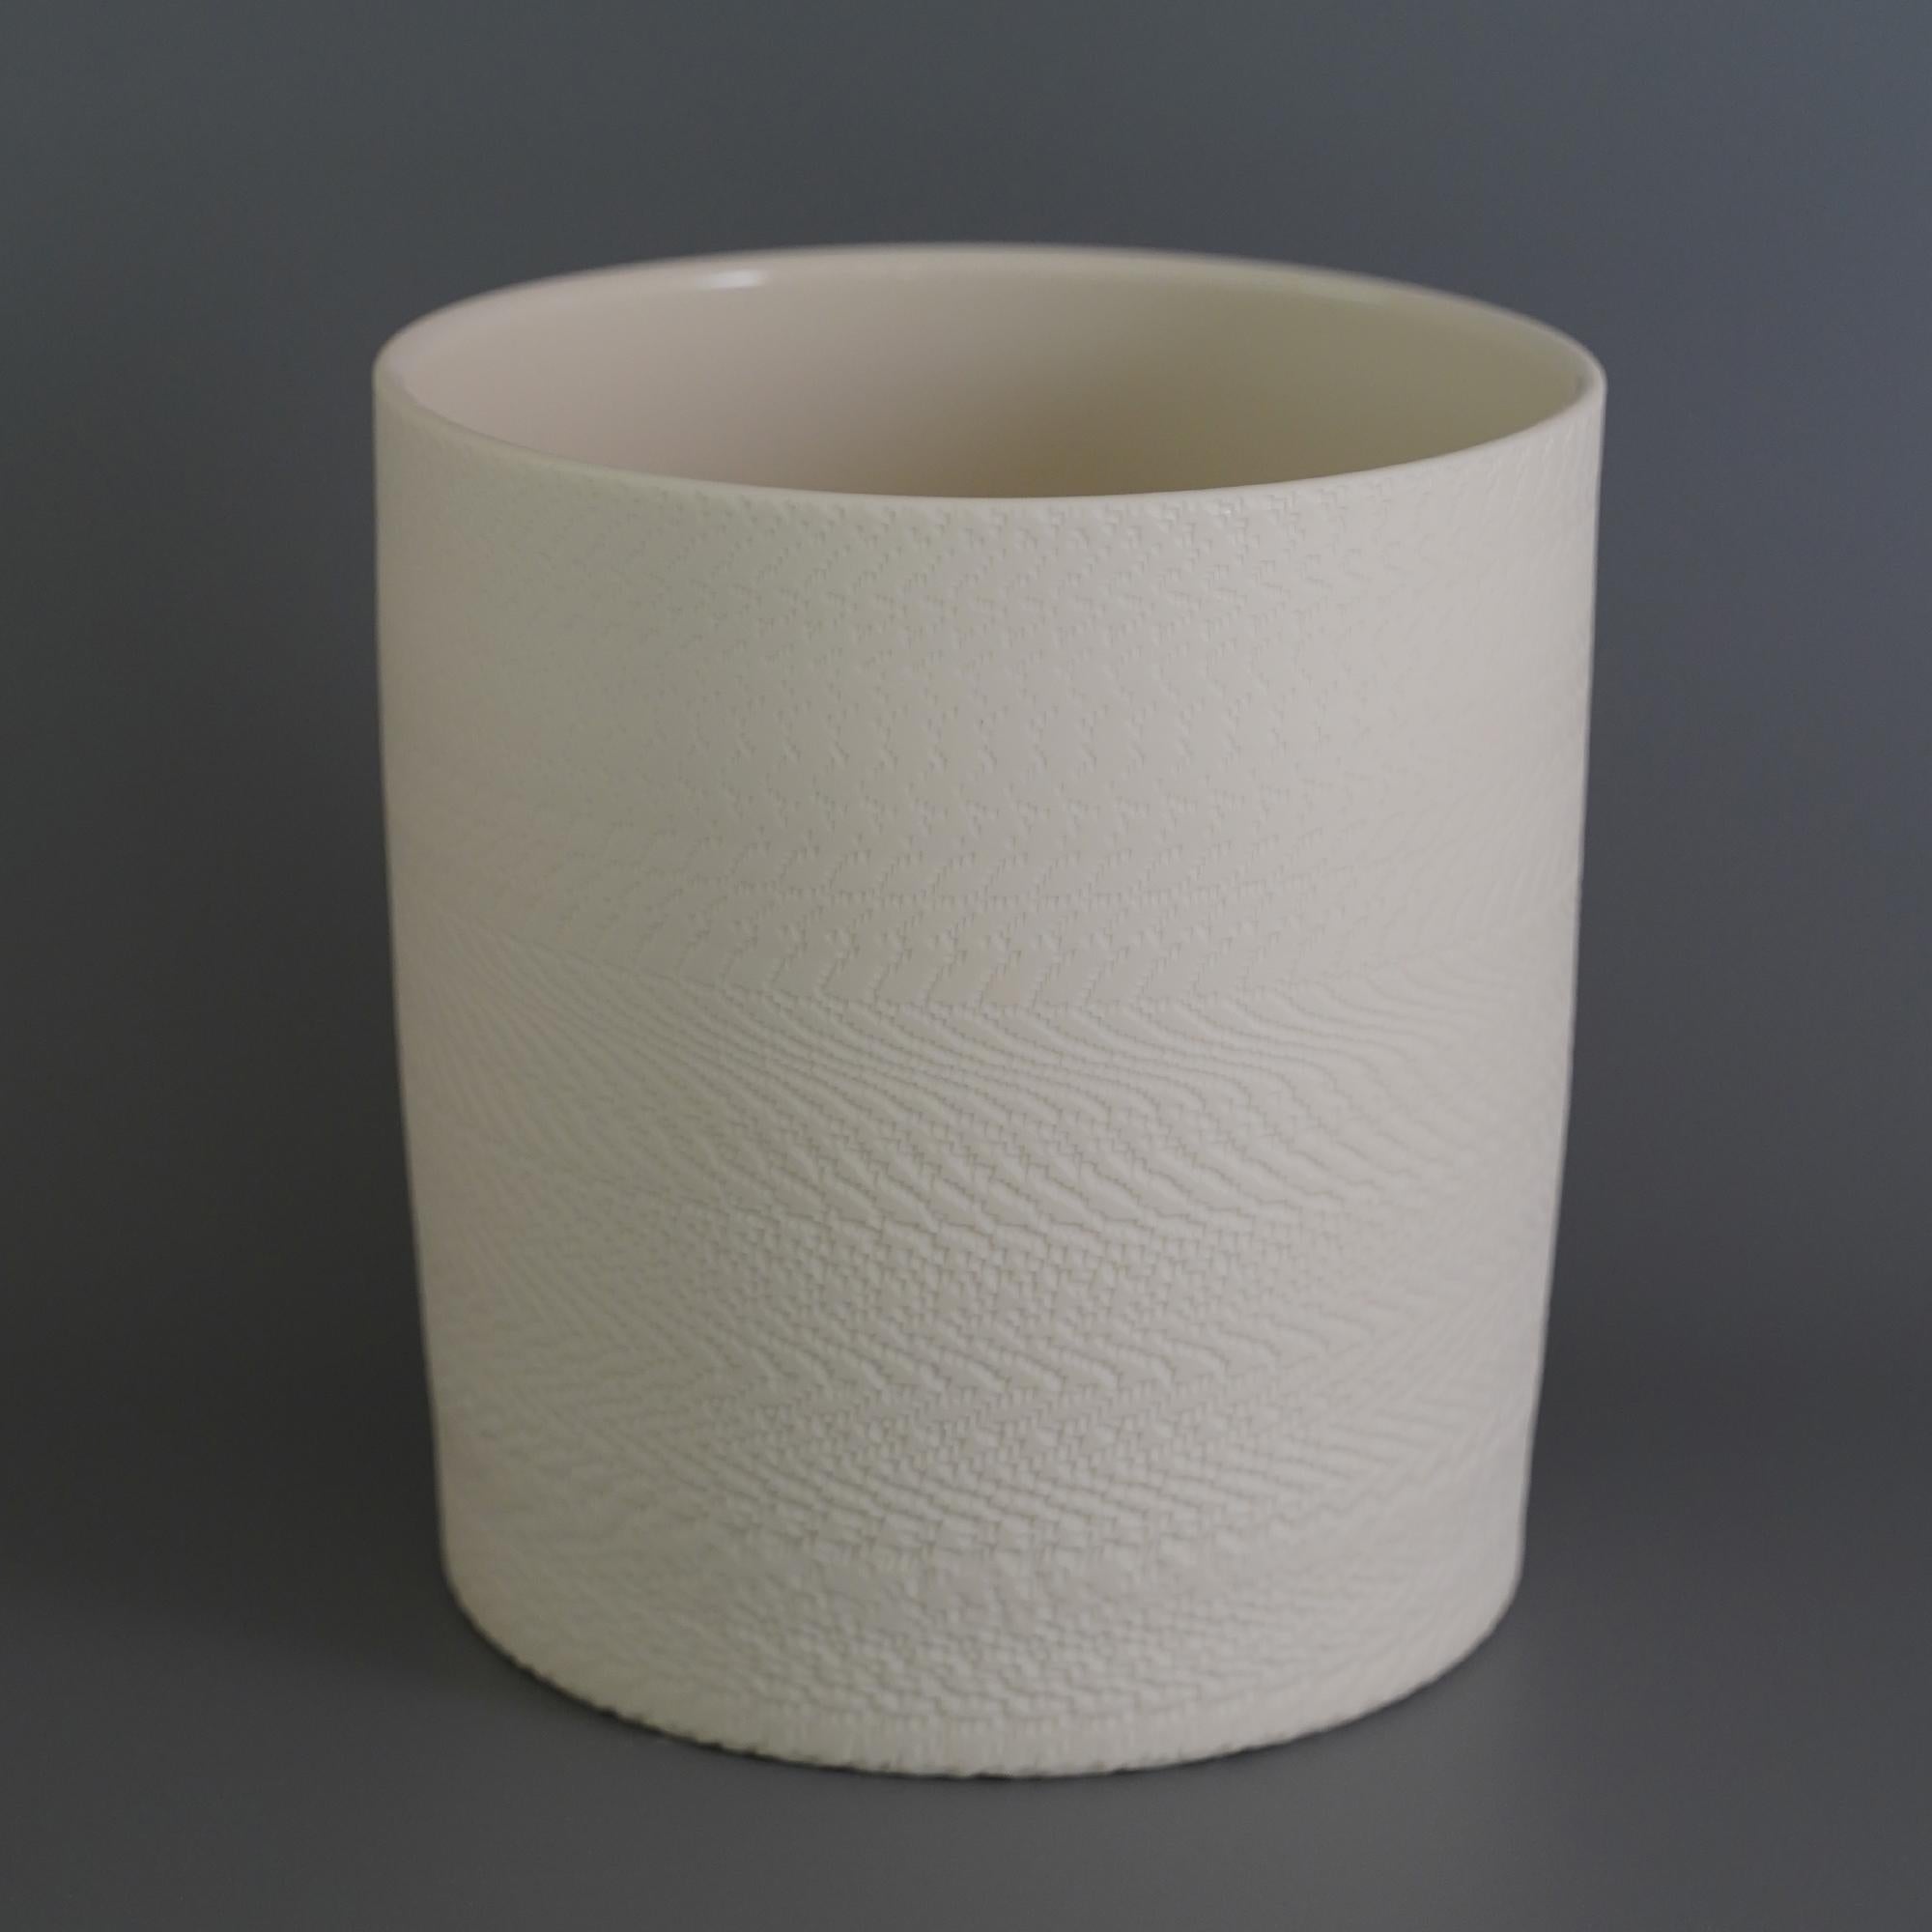 Vase Helice zylinder par Studio Cúze
Dimensions : L 17,5 x H 18 cm
Matériaux : céramique

Ce vase cylindrique est un chef-d'œuvre de l'art de la poterie. Yasuhiro Cúze a spécialement mis en pot ce vase et vous livre donc, comme pour tous ses autres